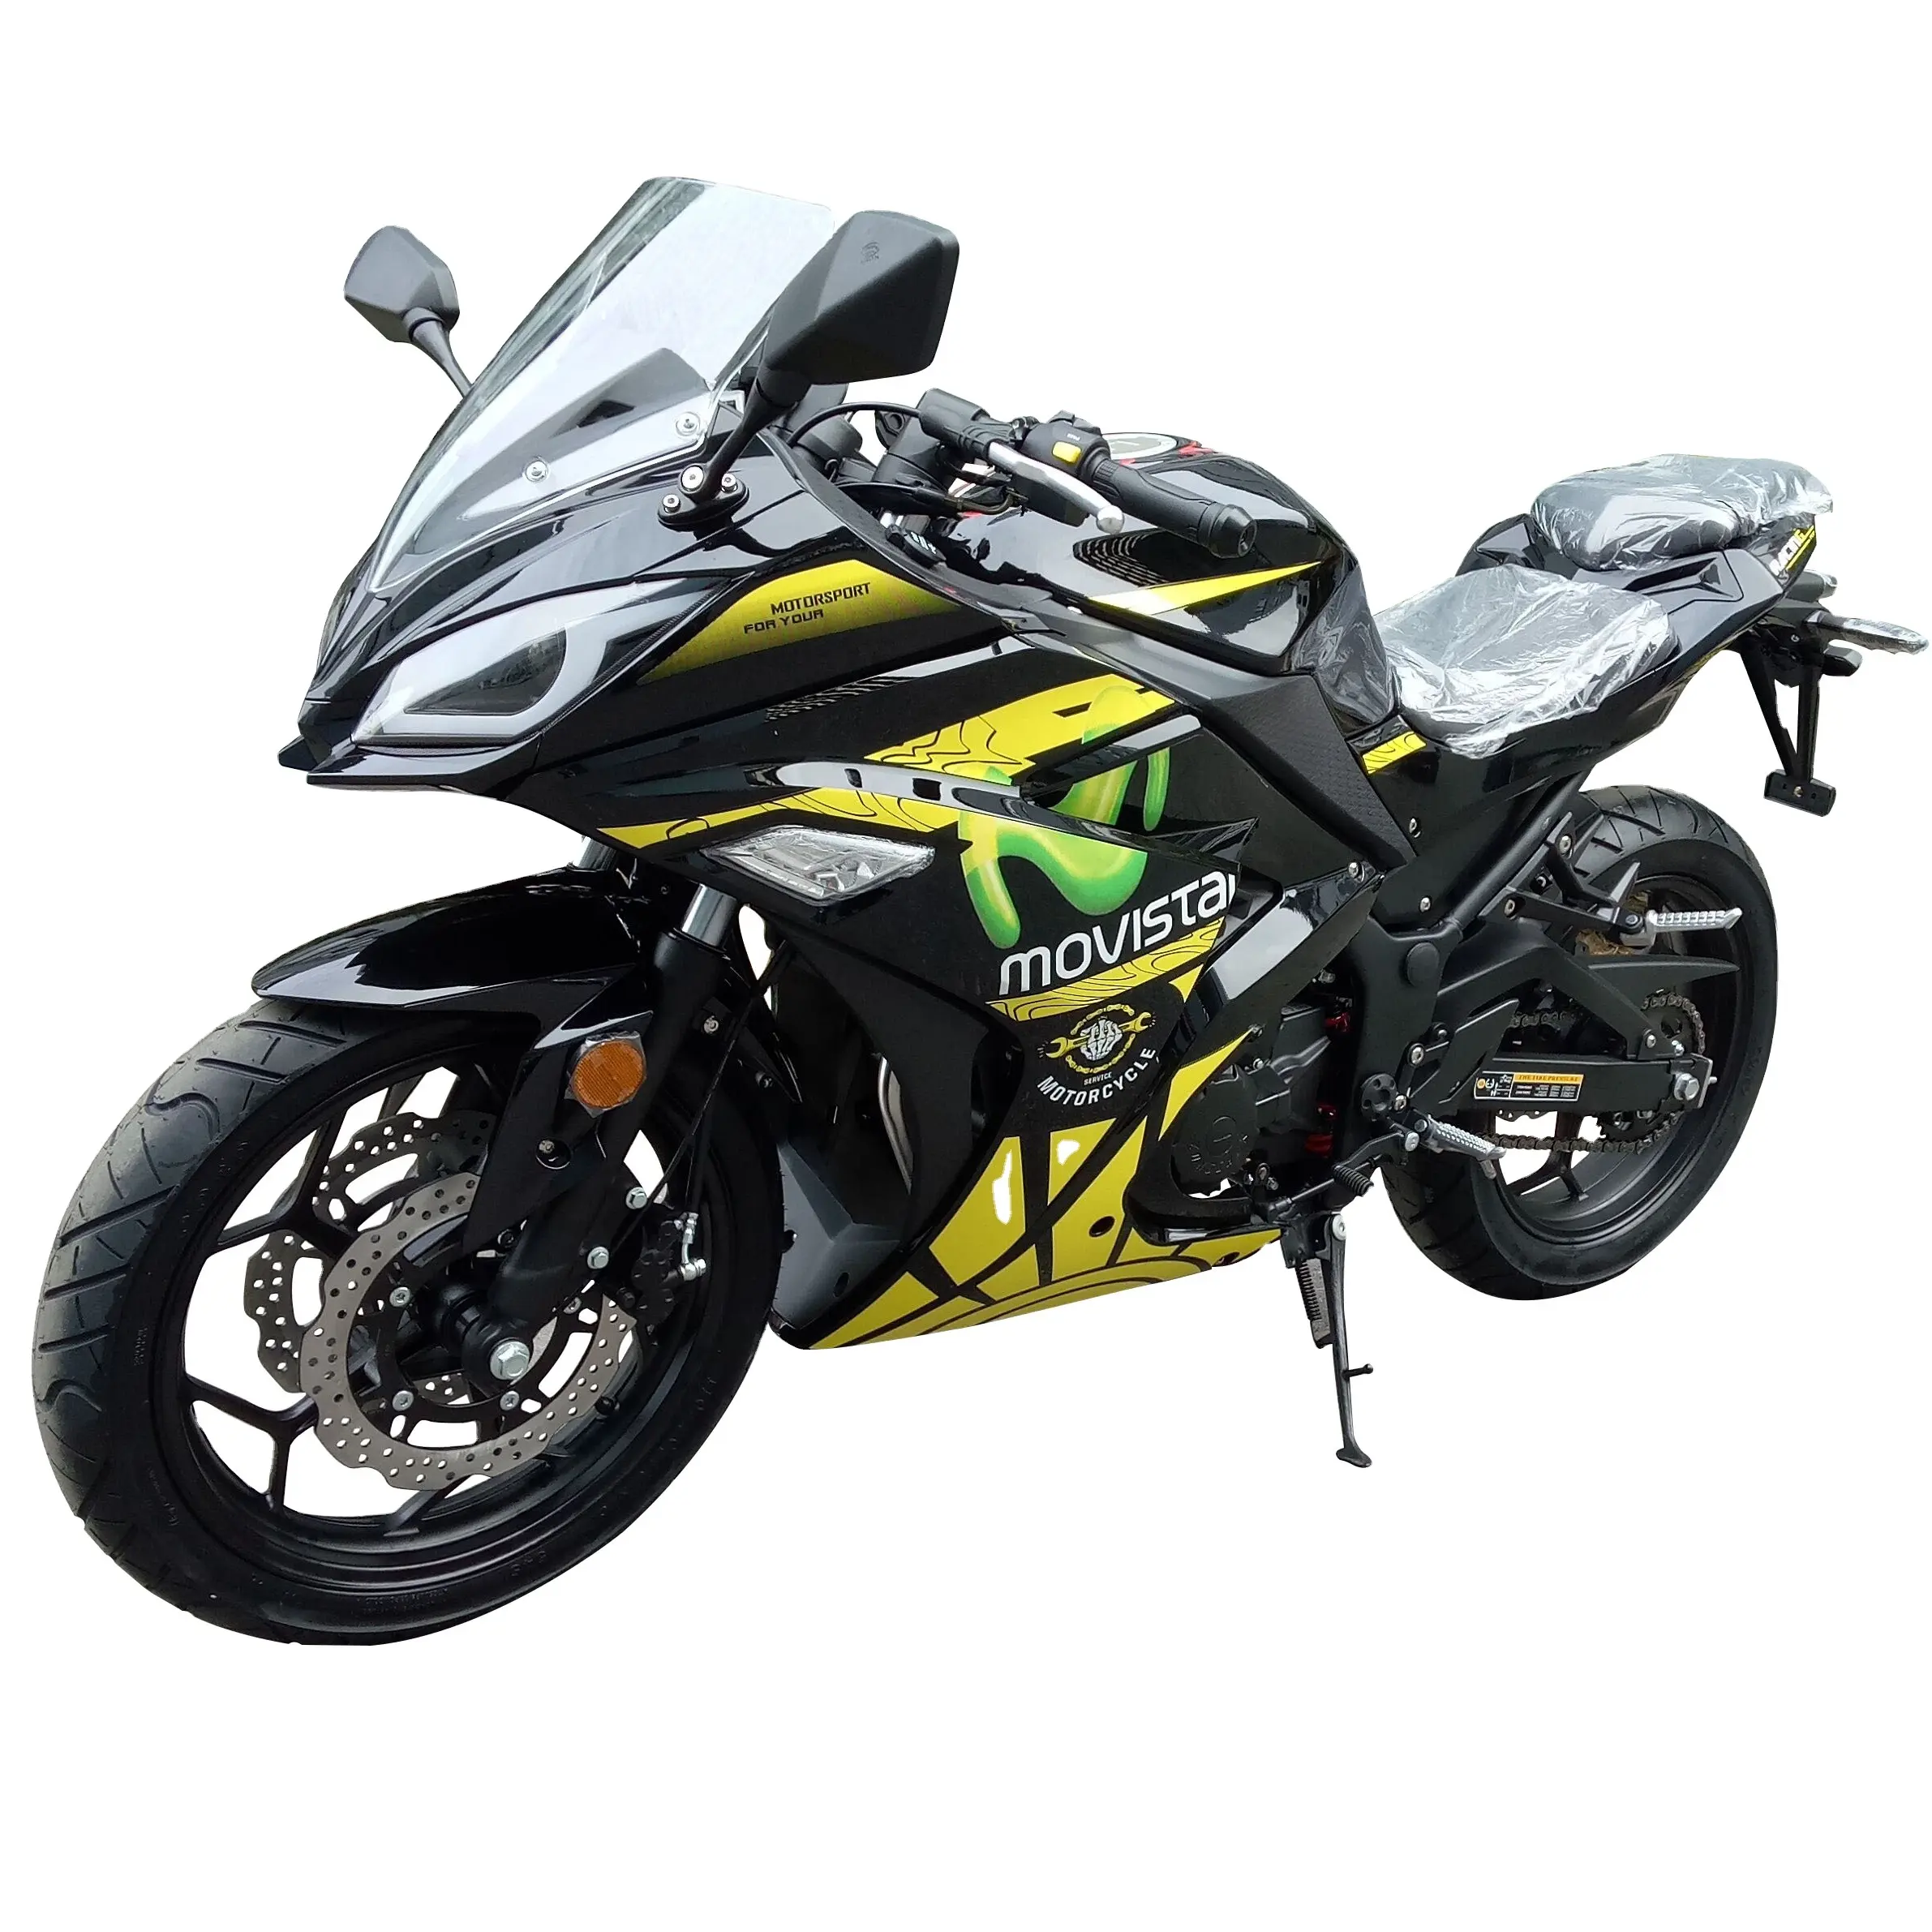 Motocicleta de corrida, venda quente de motocicleta de RZ-2 rz novo xrz ninja abs efi EURO-4 150cc 200cc 250cc 300cc 400cc